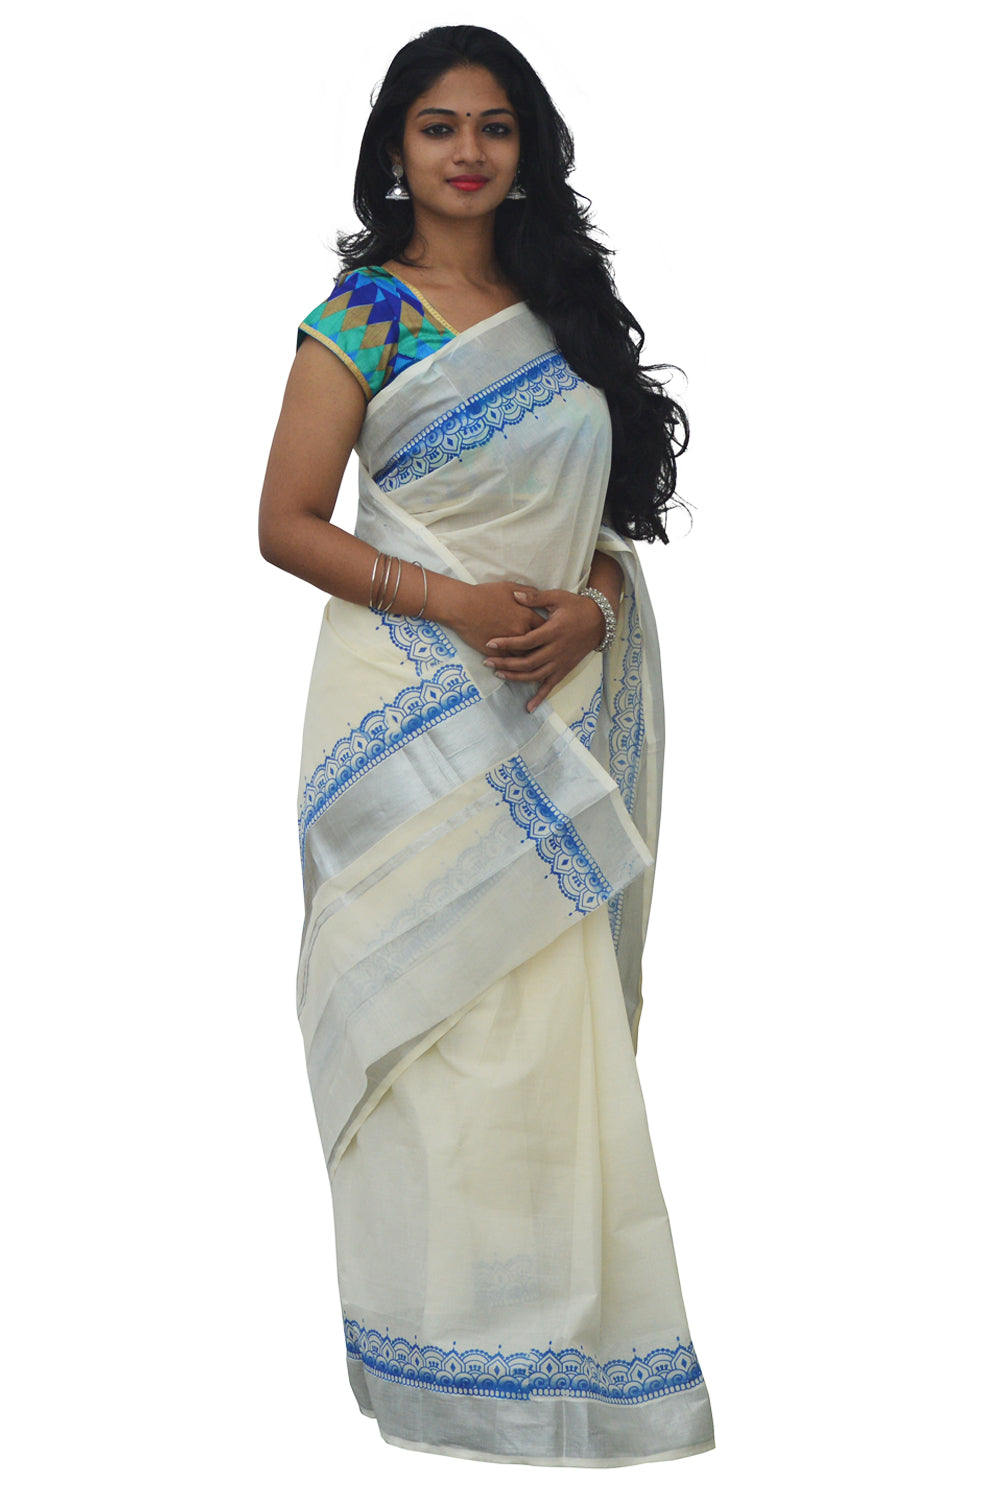 Kerala Silver Kasavu Saree with Light Blue Block Print